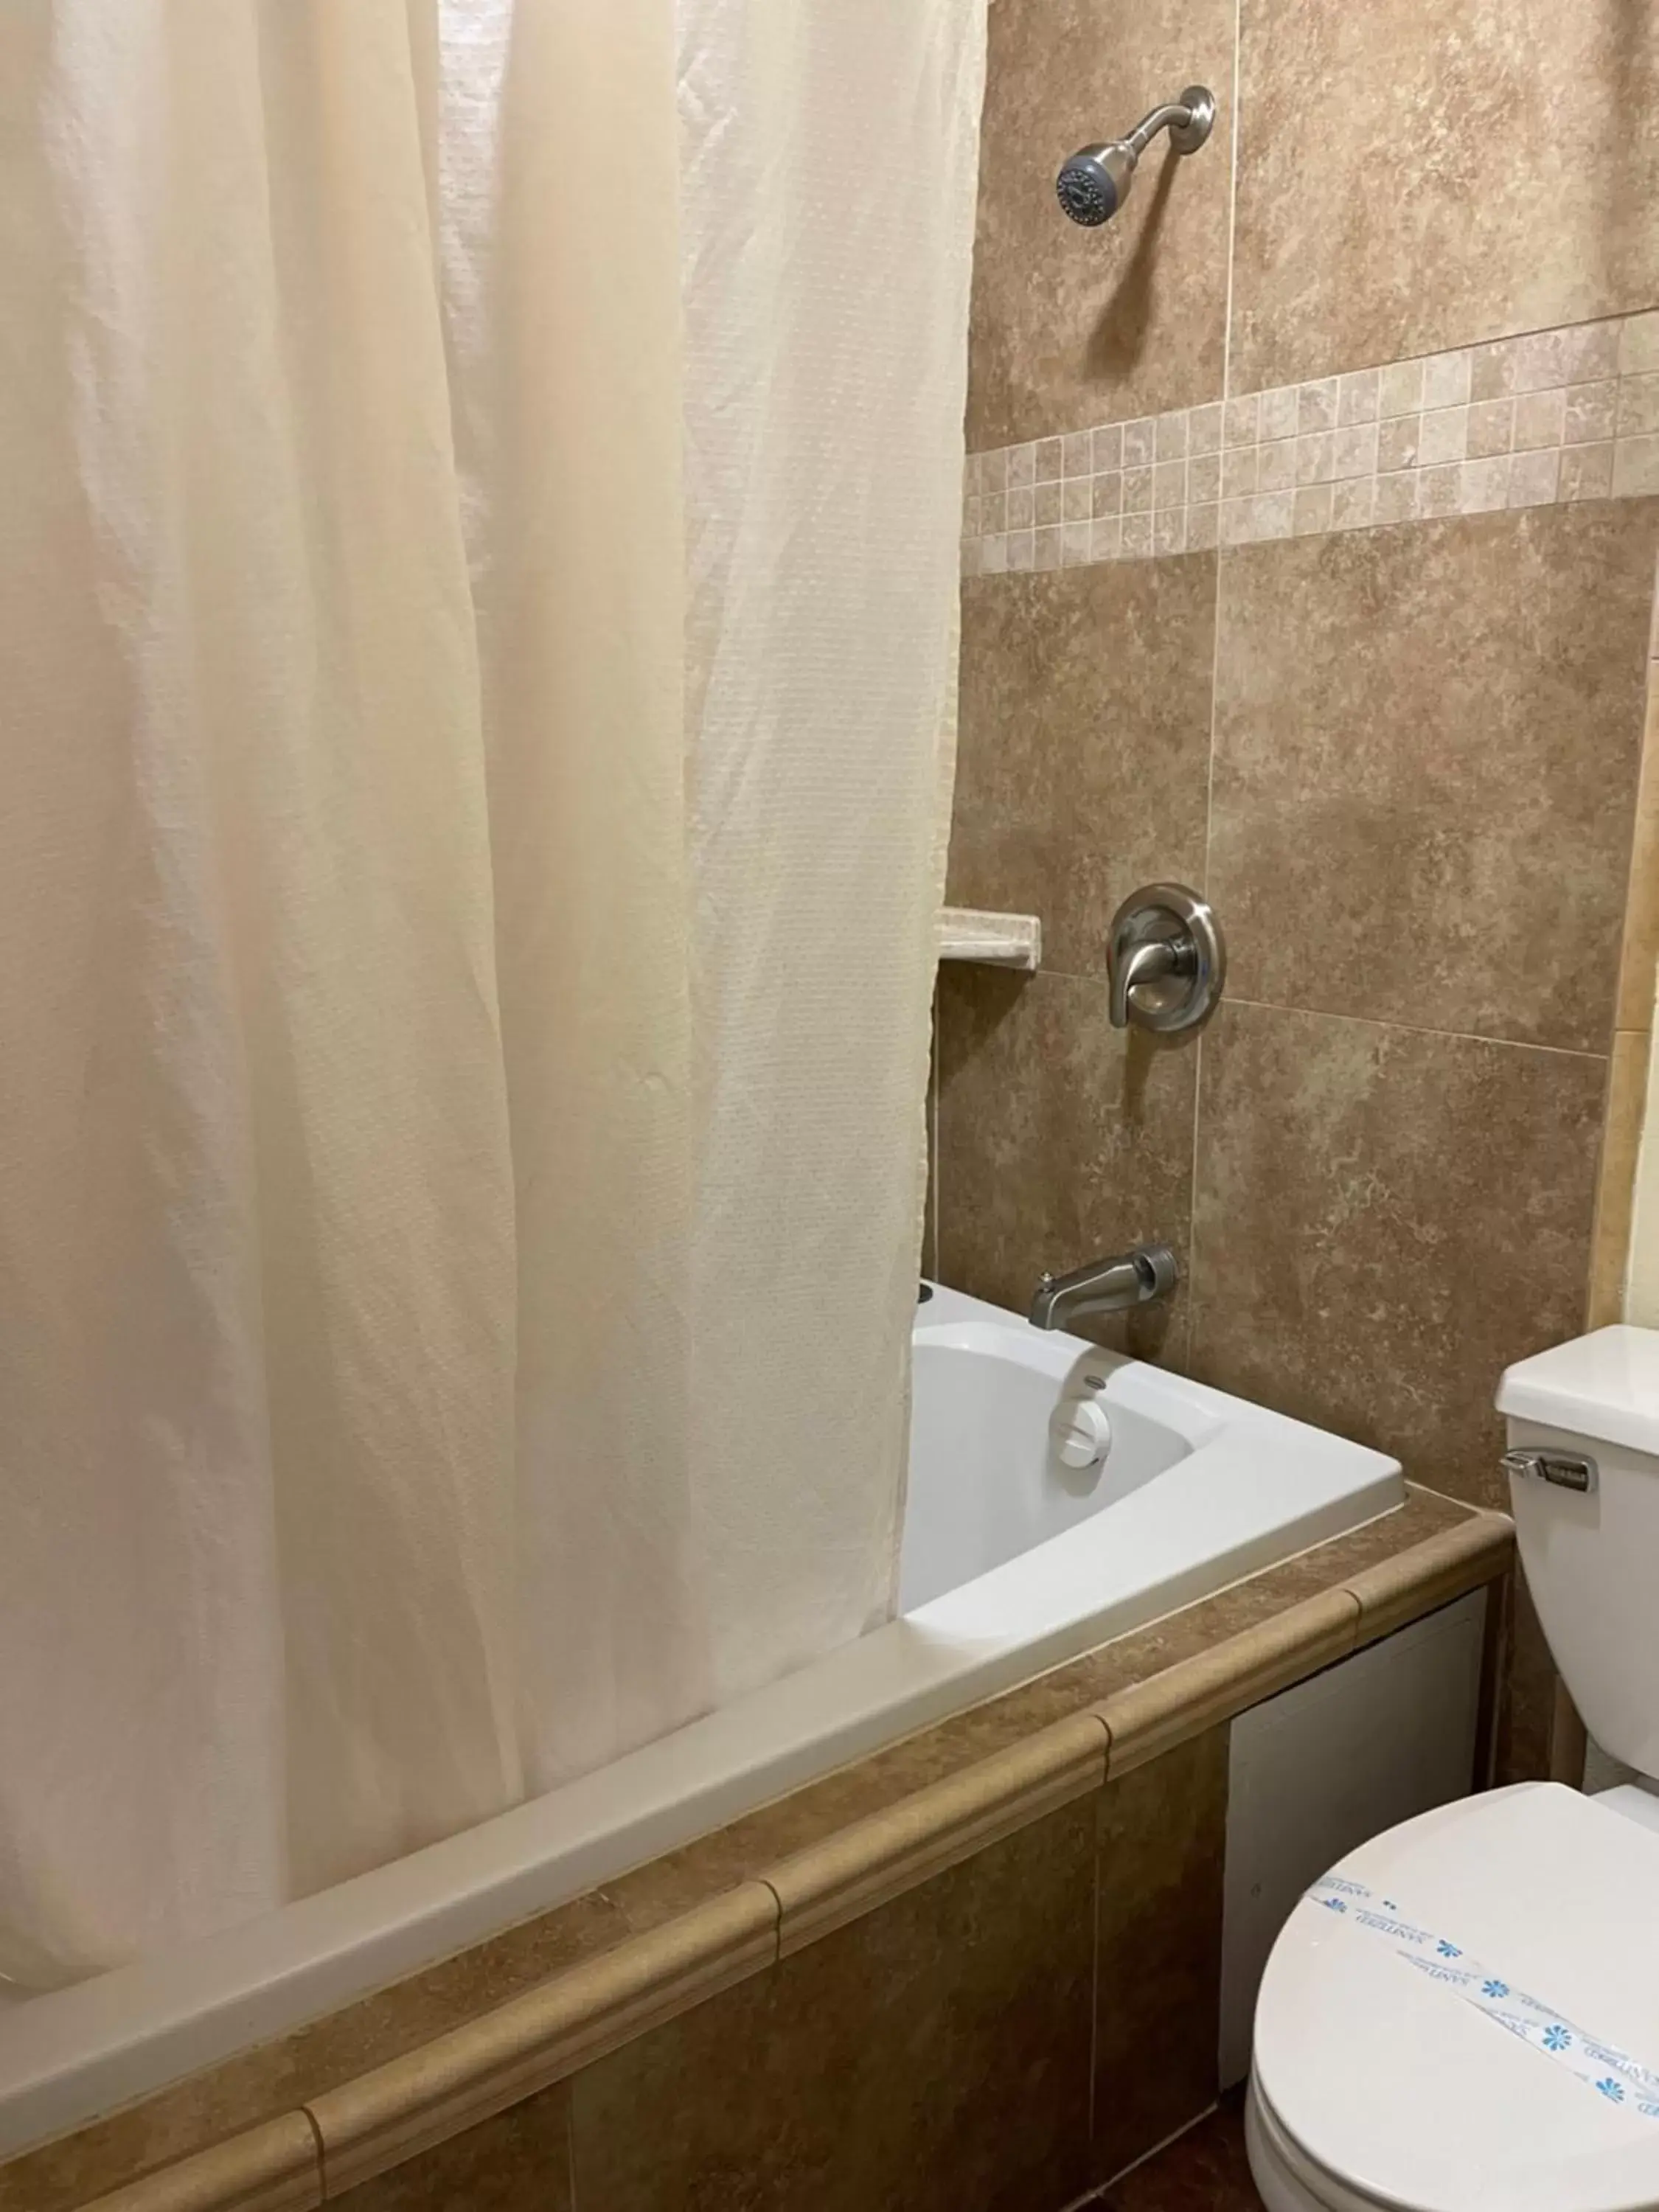 Bathroom in Riverside Inn & Suites Santa Cruz